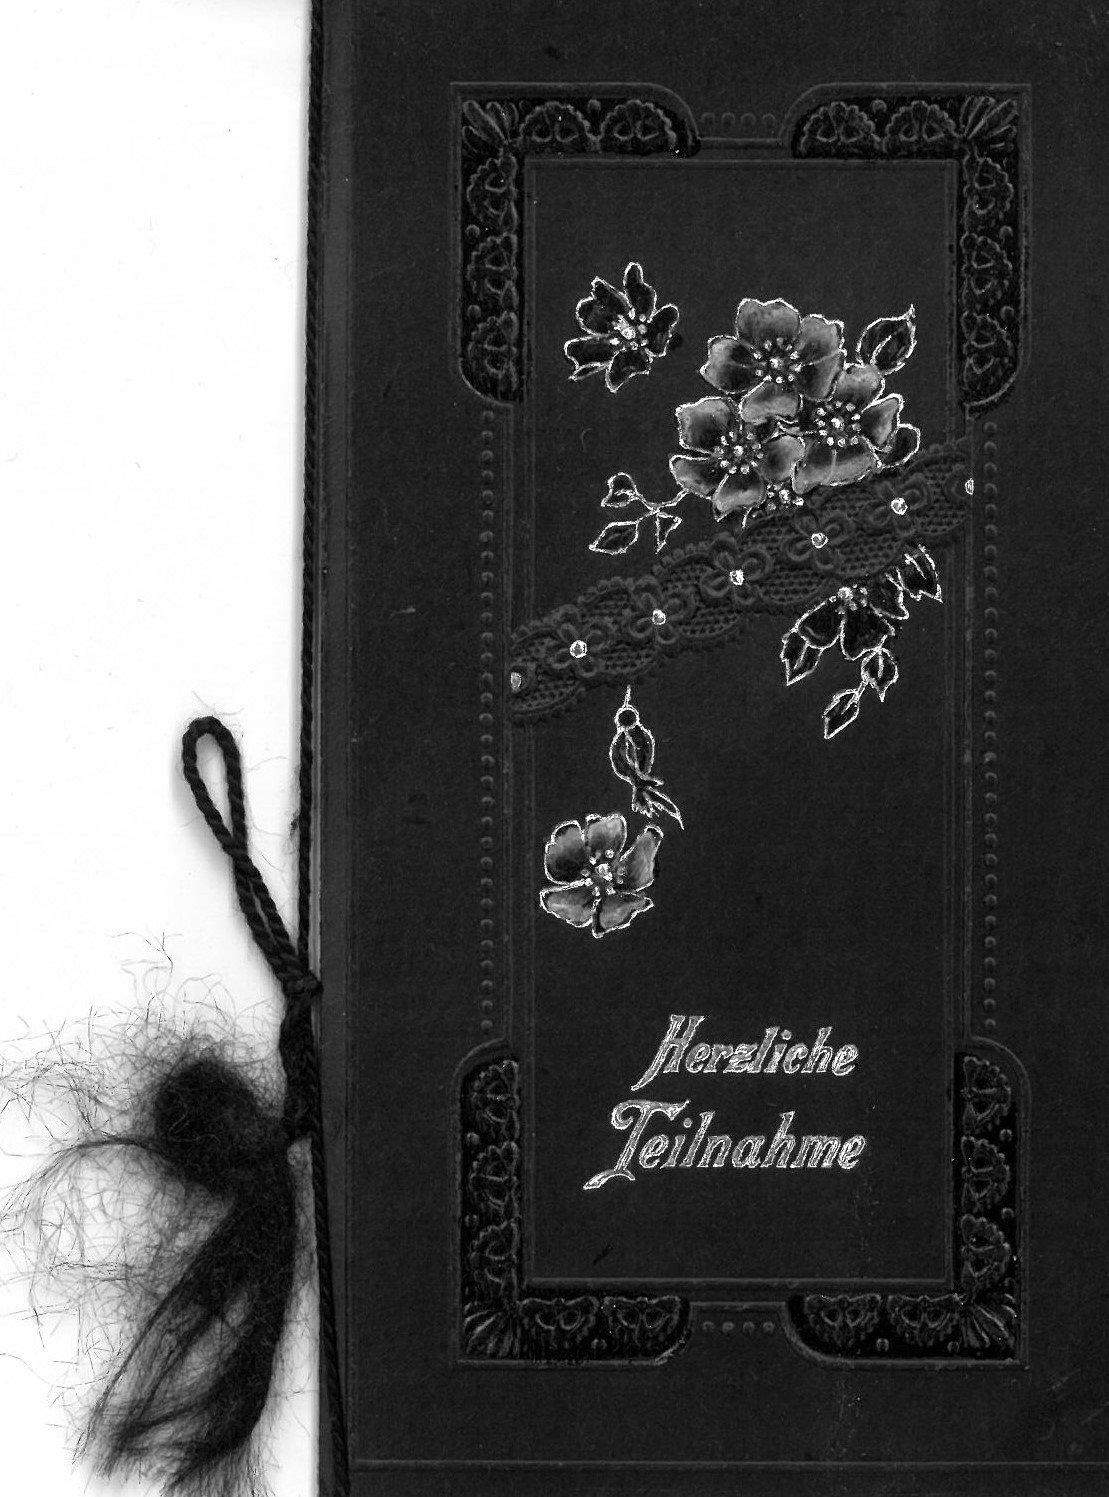 Kondolenzkarte "Herzliche Teilnahme" (von C. Stahnke) (Museum für Sepulkralkultur CC0)